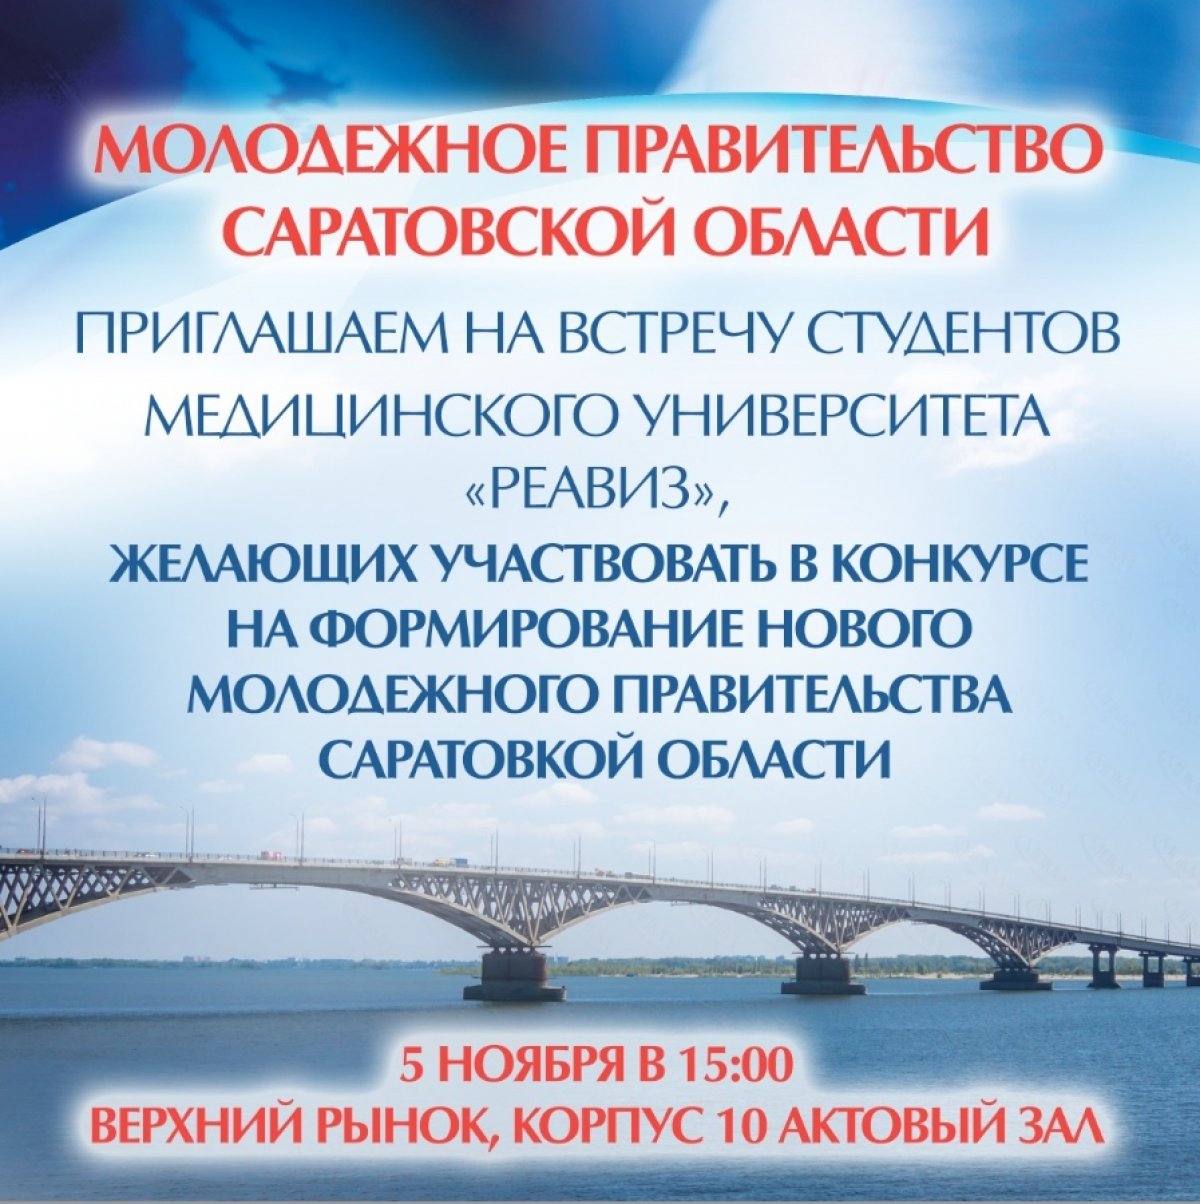 Приглашаем студентов на встречу с представителями министерства молодежной политики Саратовской области 5 ноября 2019 г. в 15.00